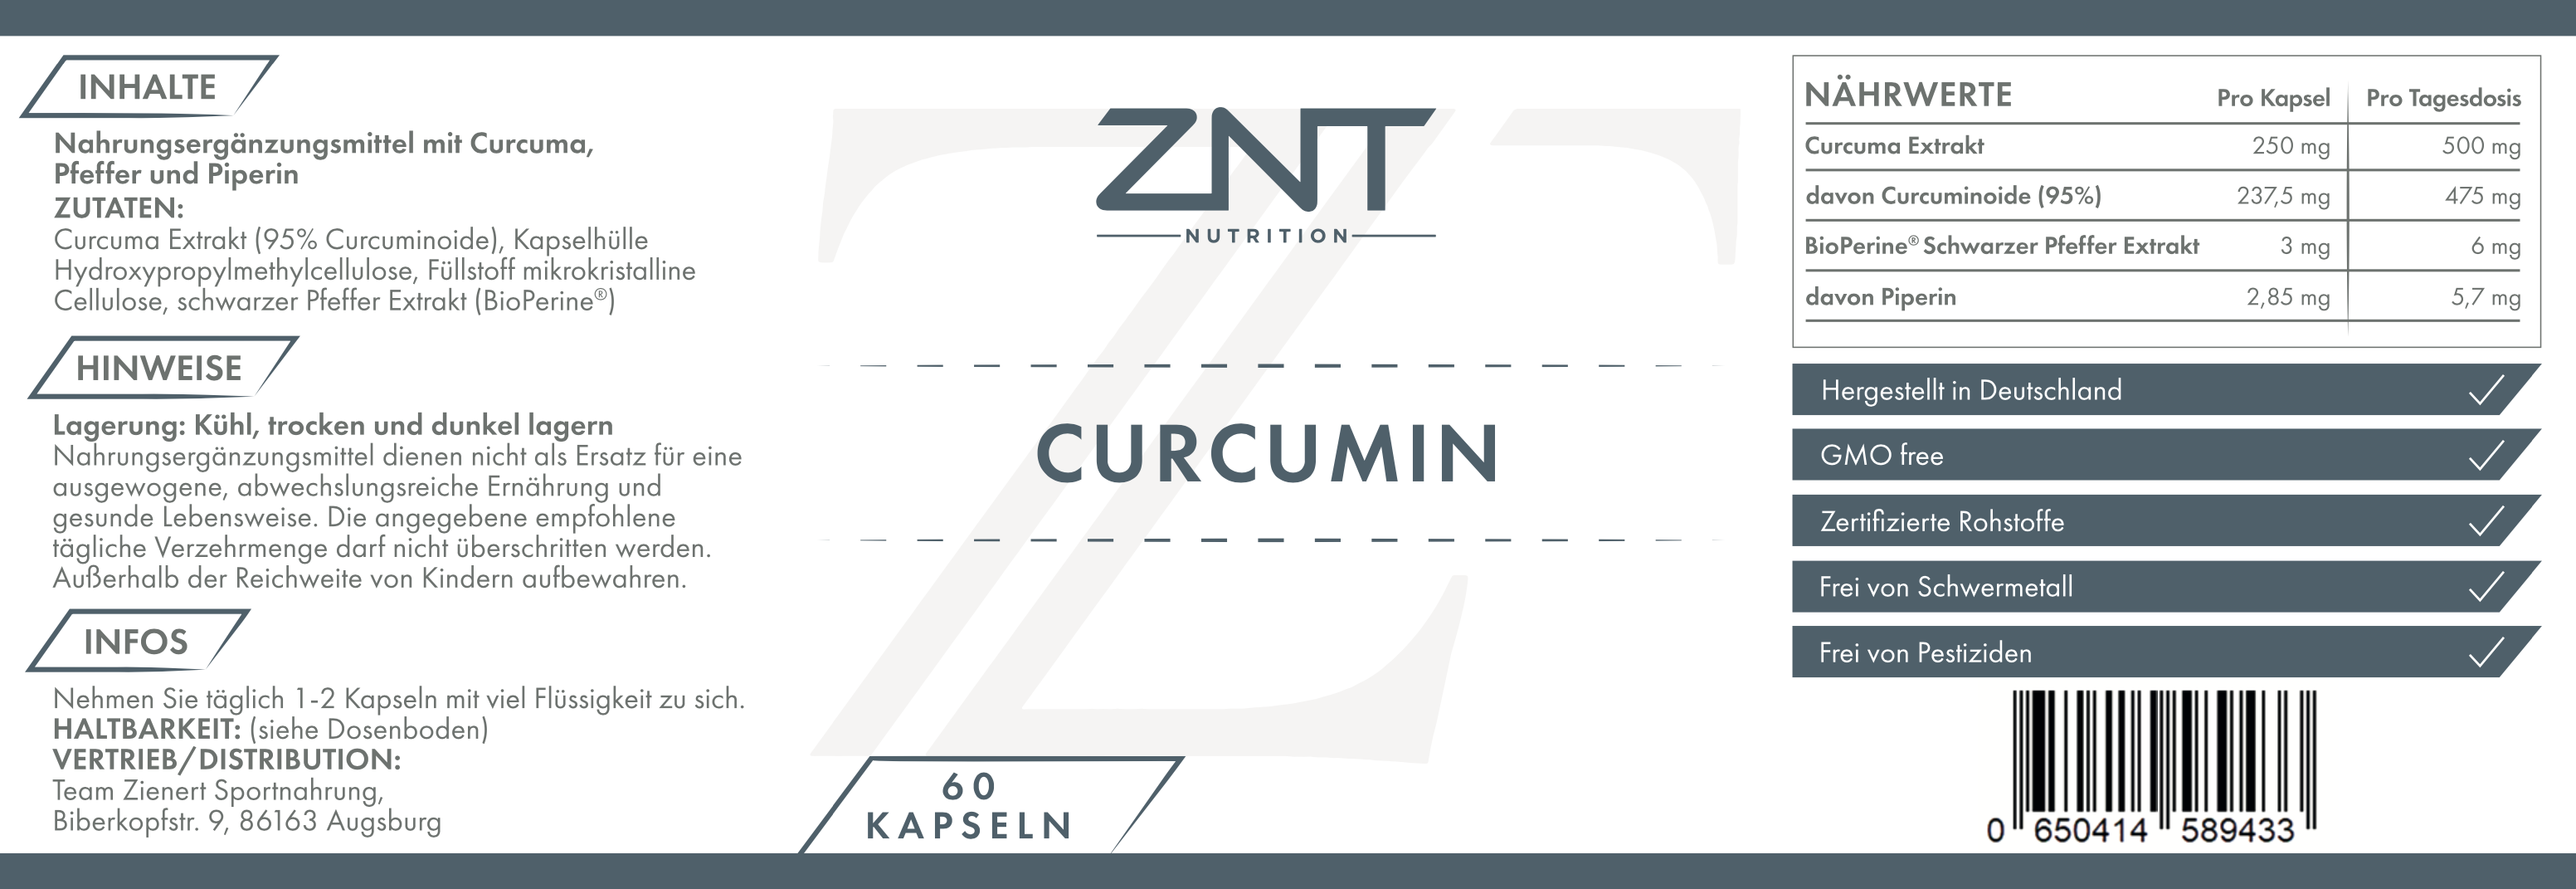 Curcumin - ZNT Nutrition